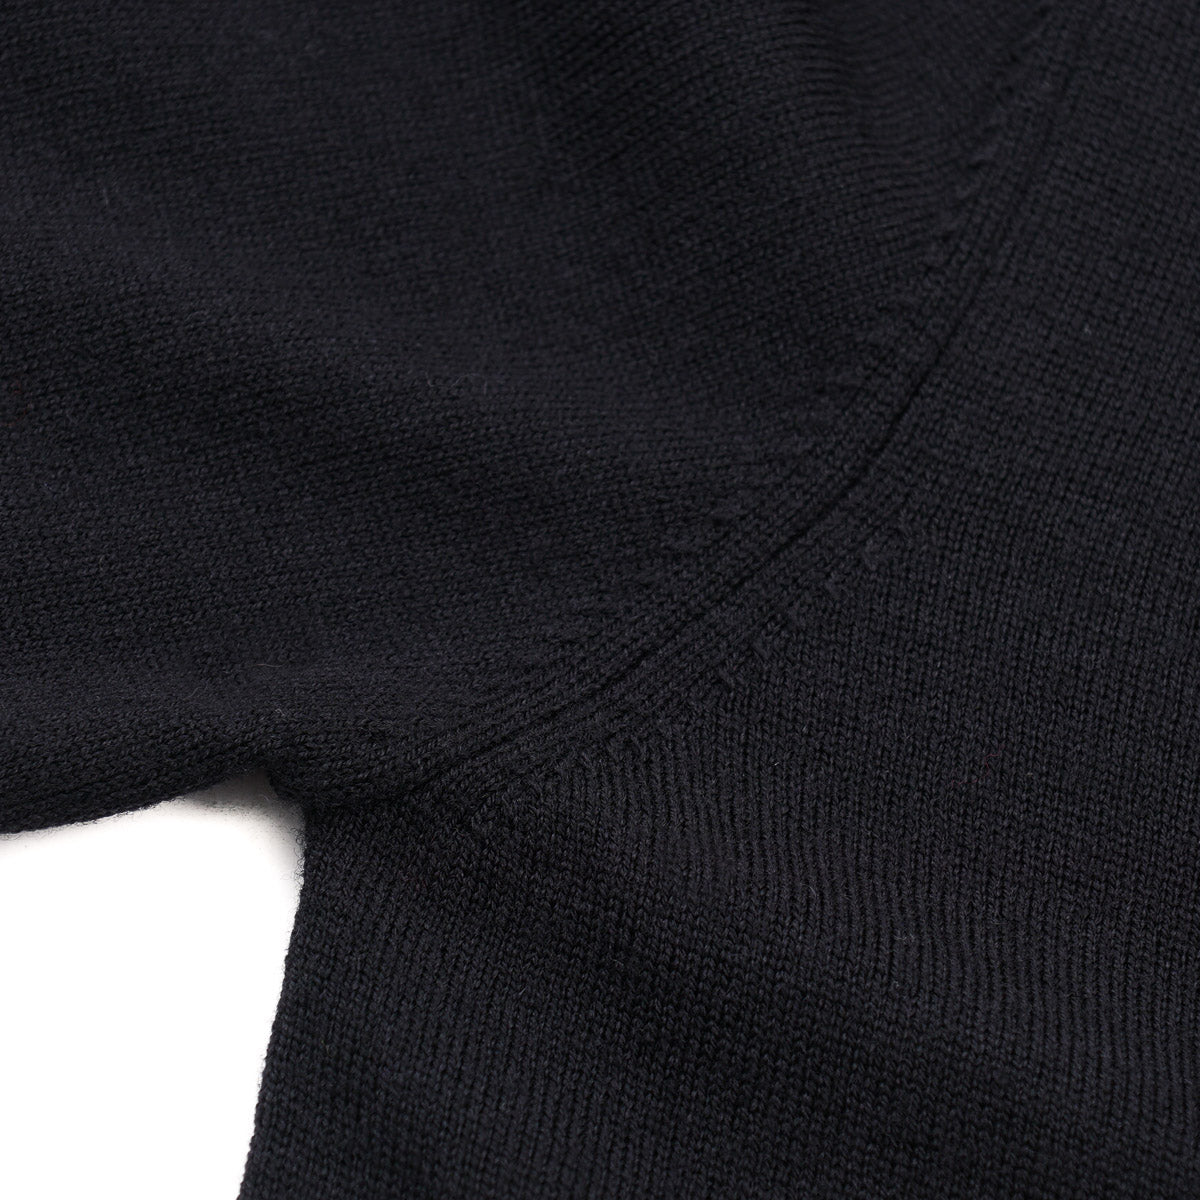 Cruciani Merino Wool Cardigan Sweater - Top Shelf Apparel